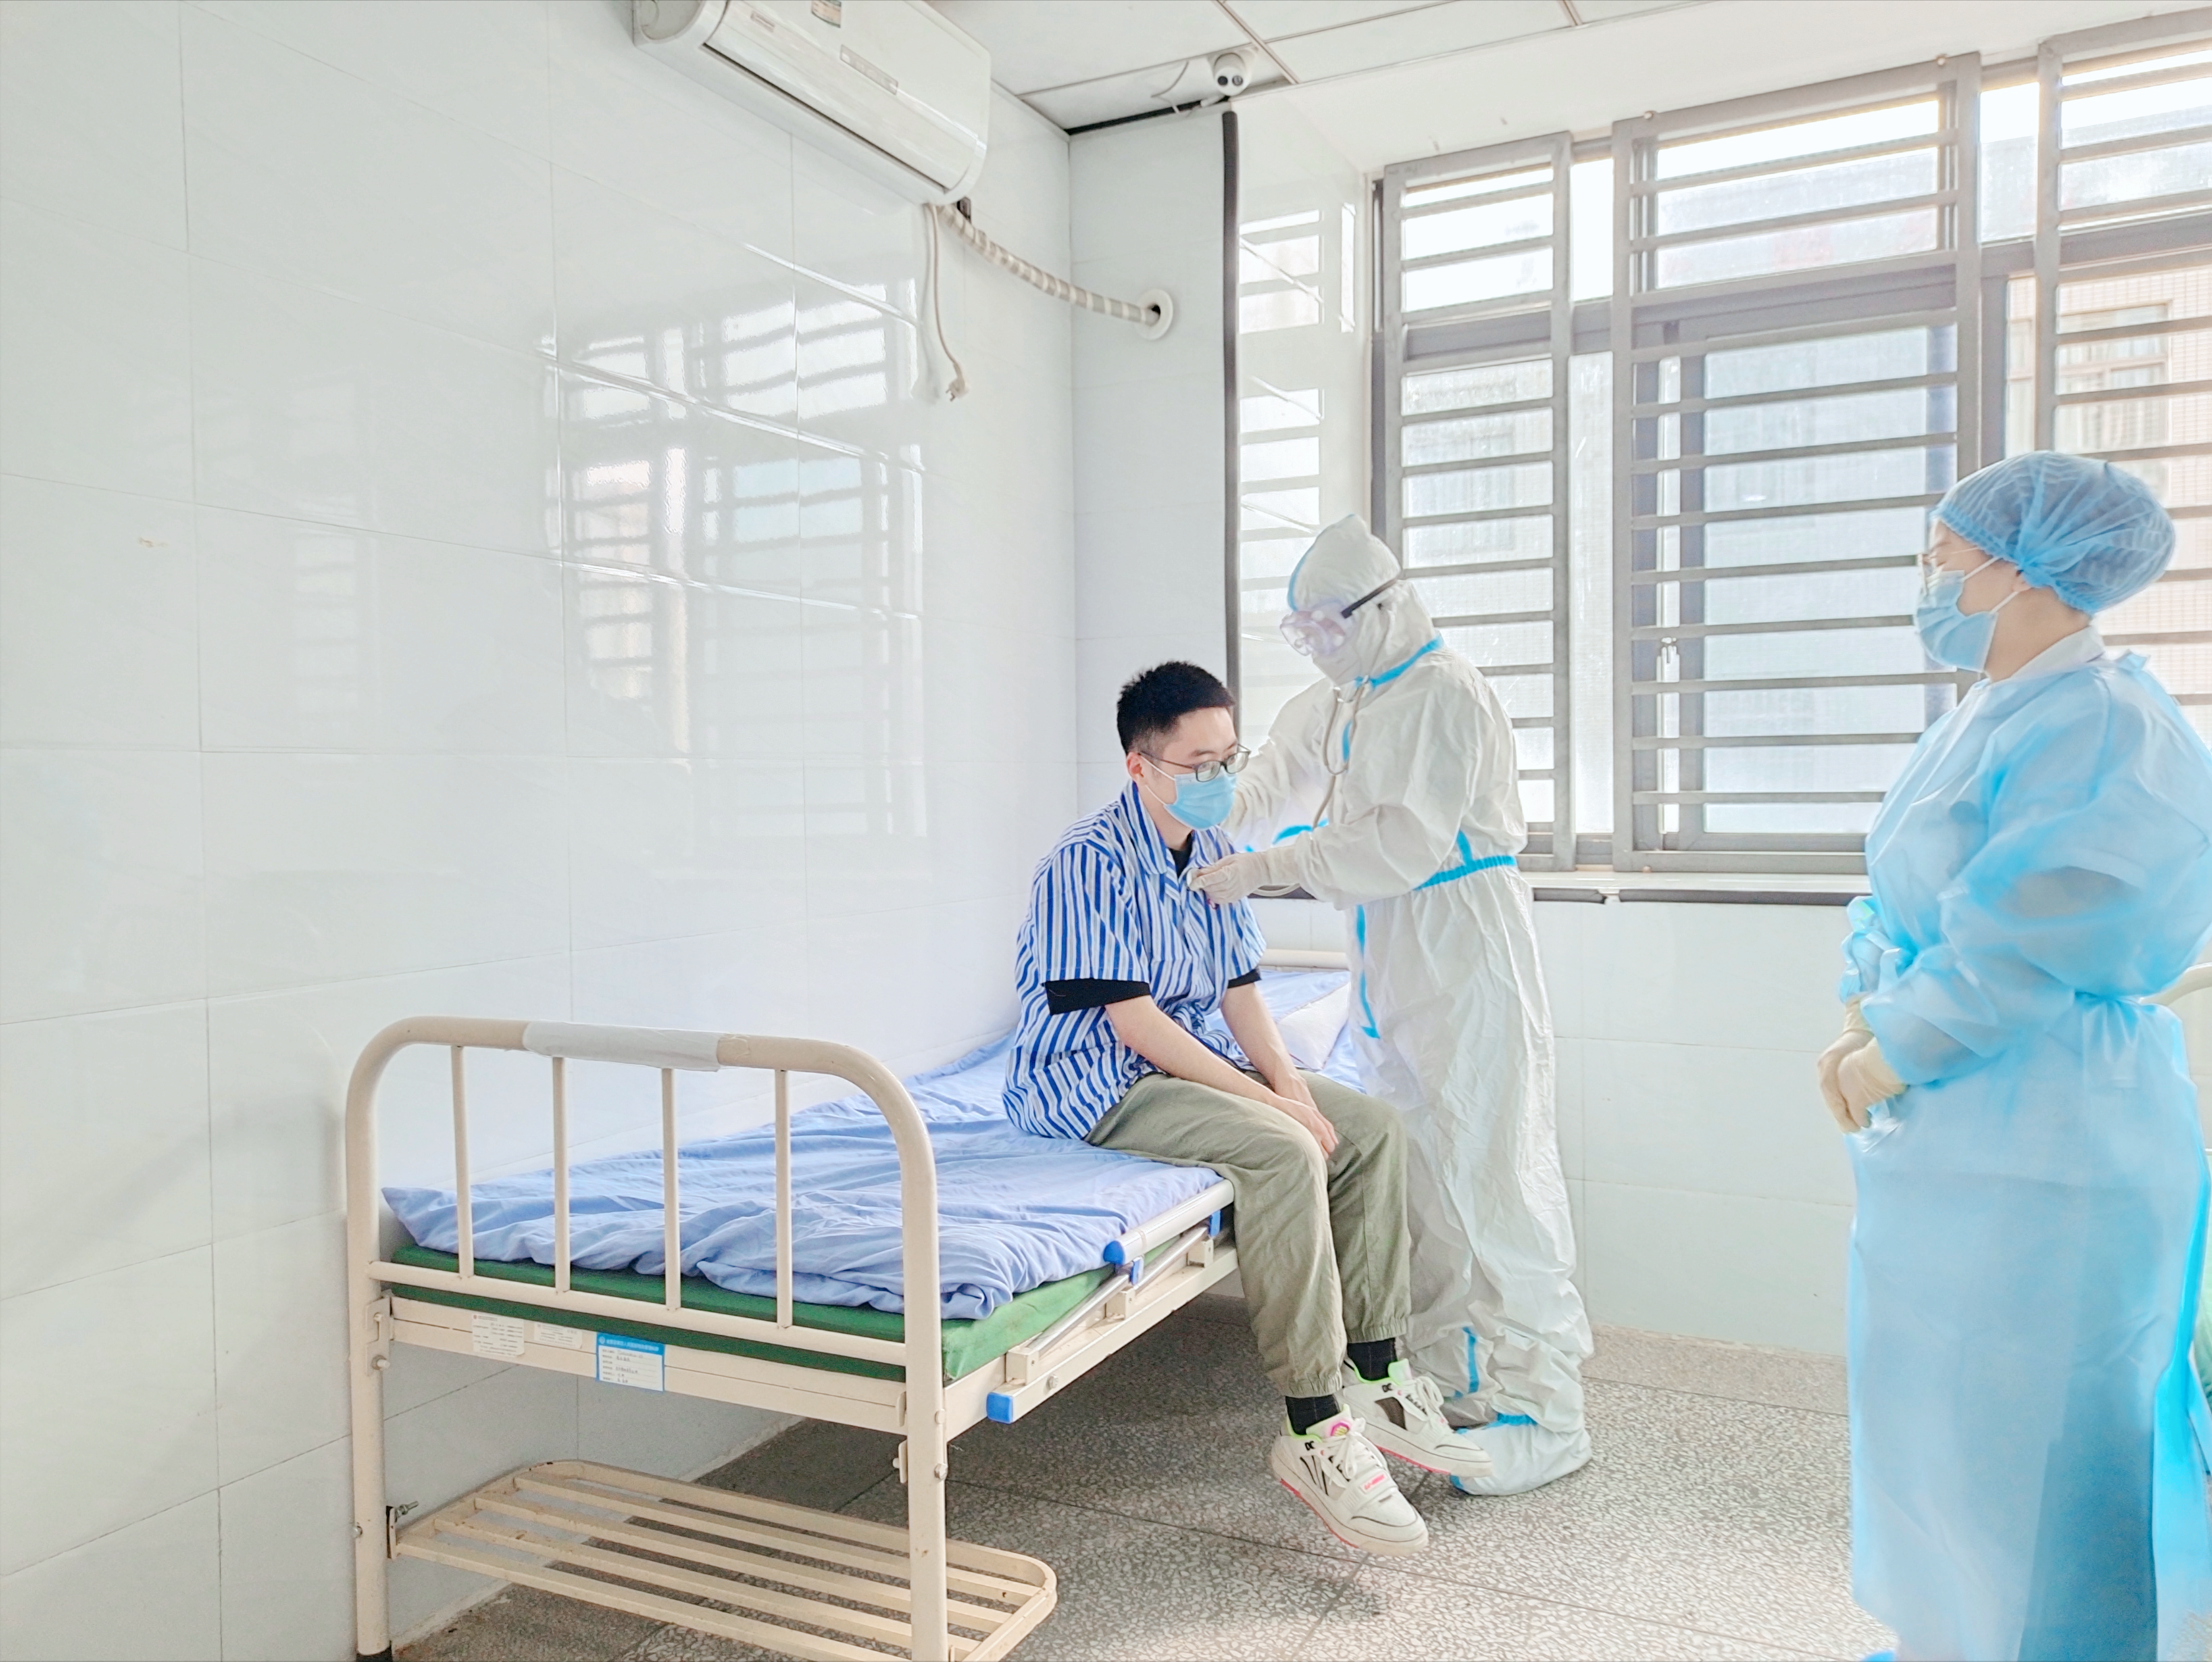 金堂县第四人民医院开展“发热患者应急处理”演练